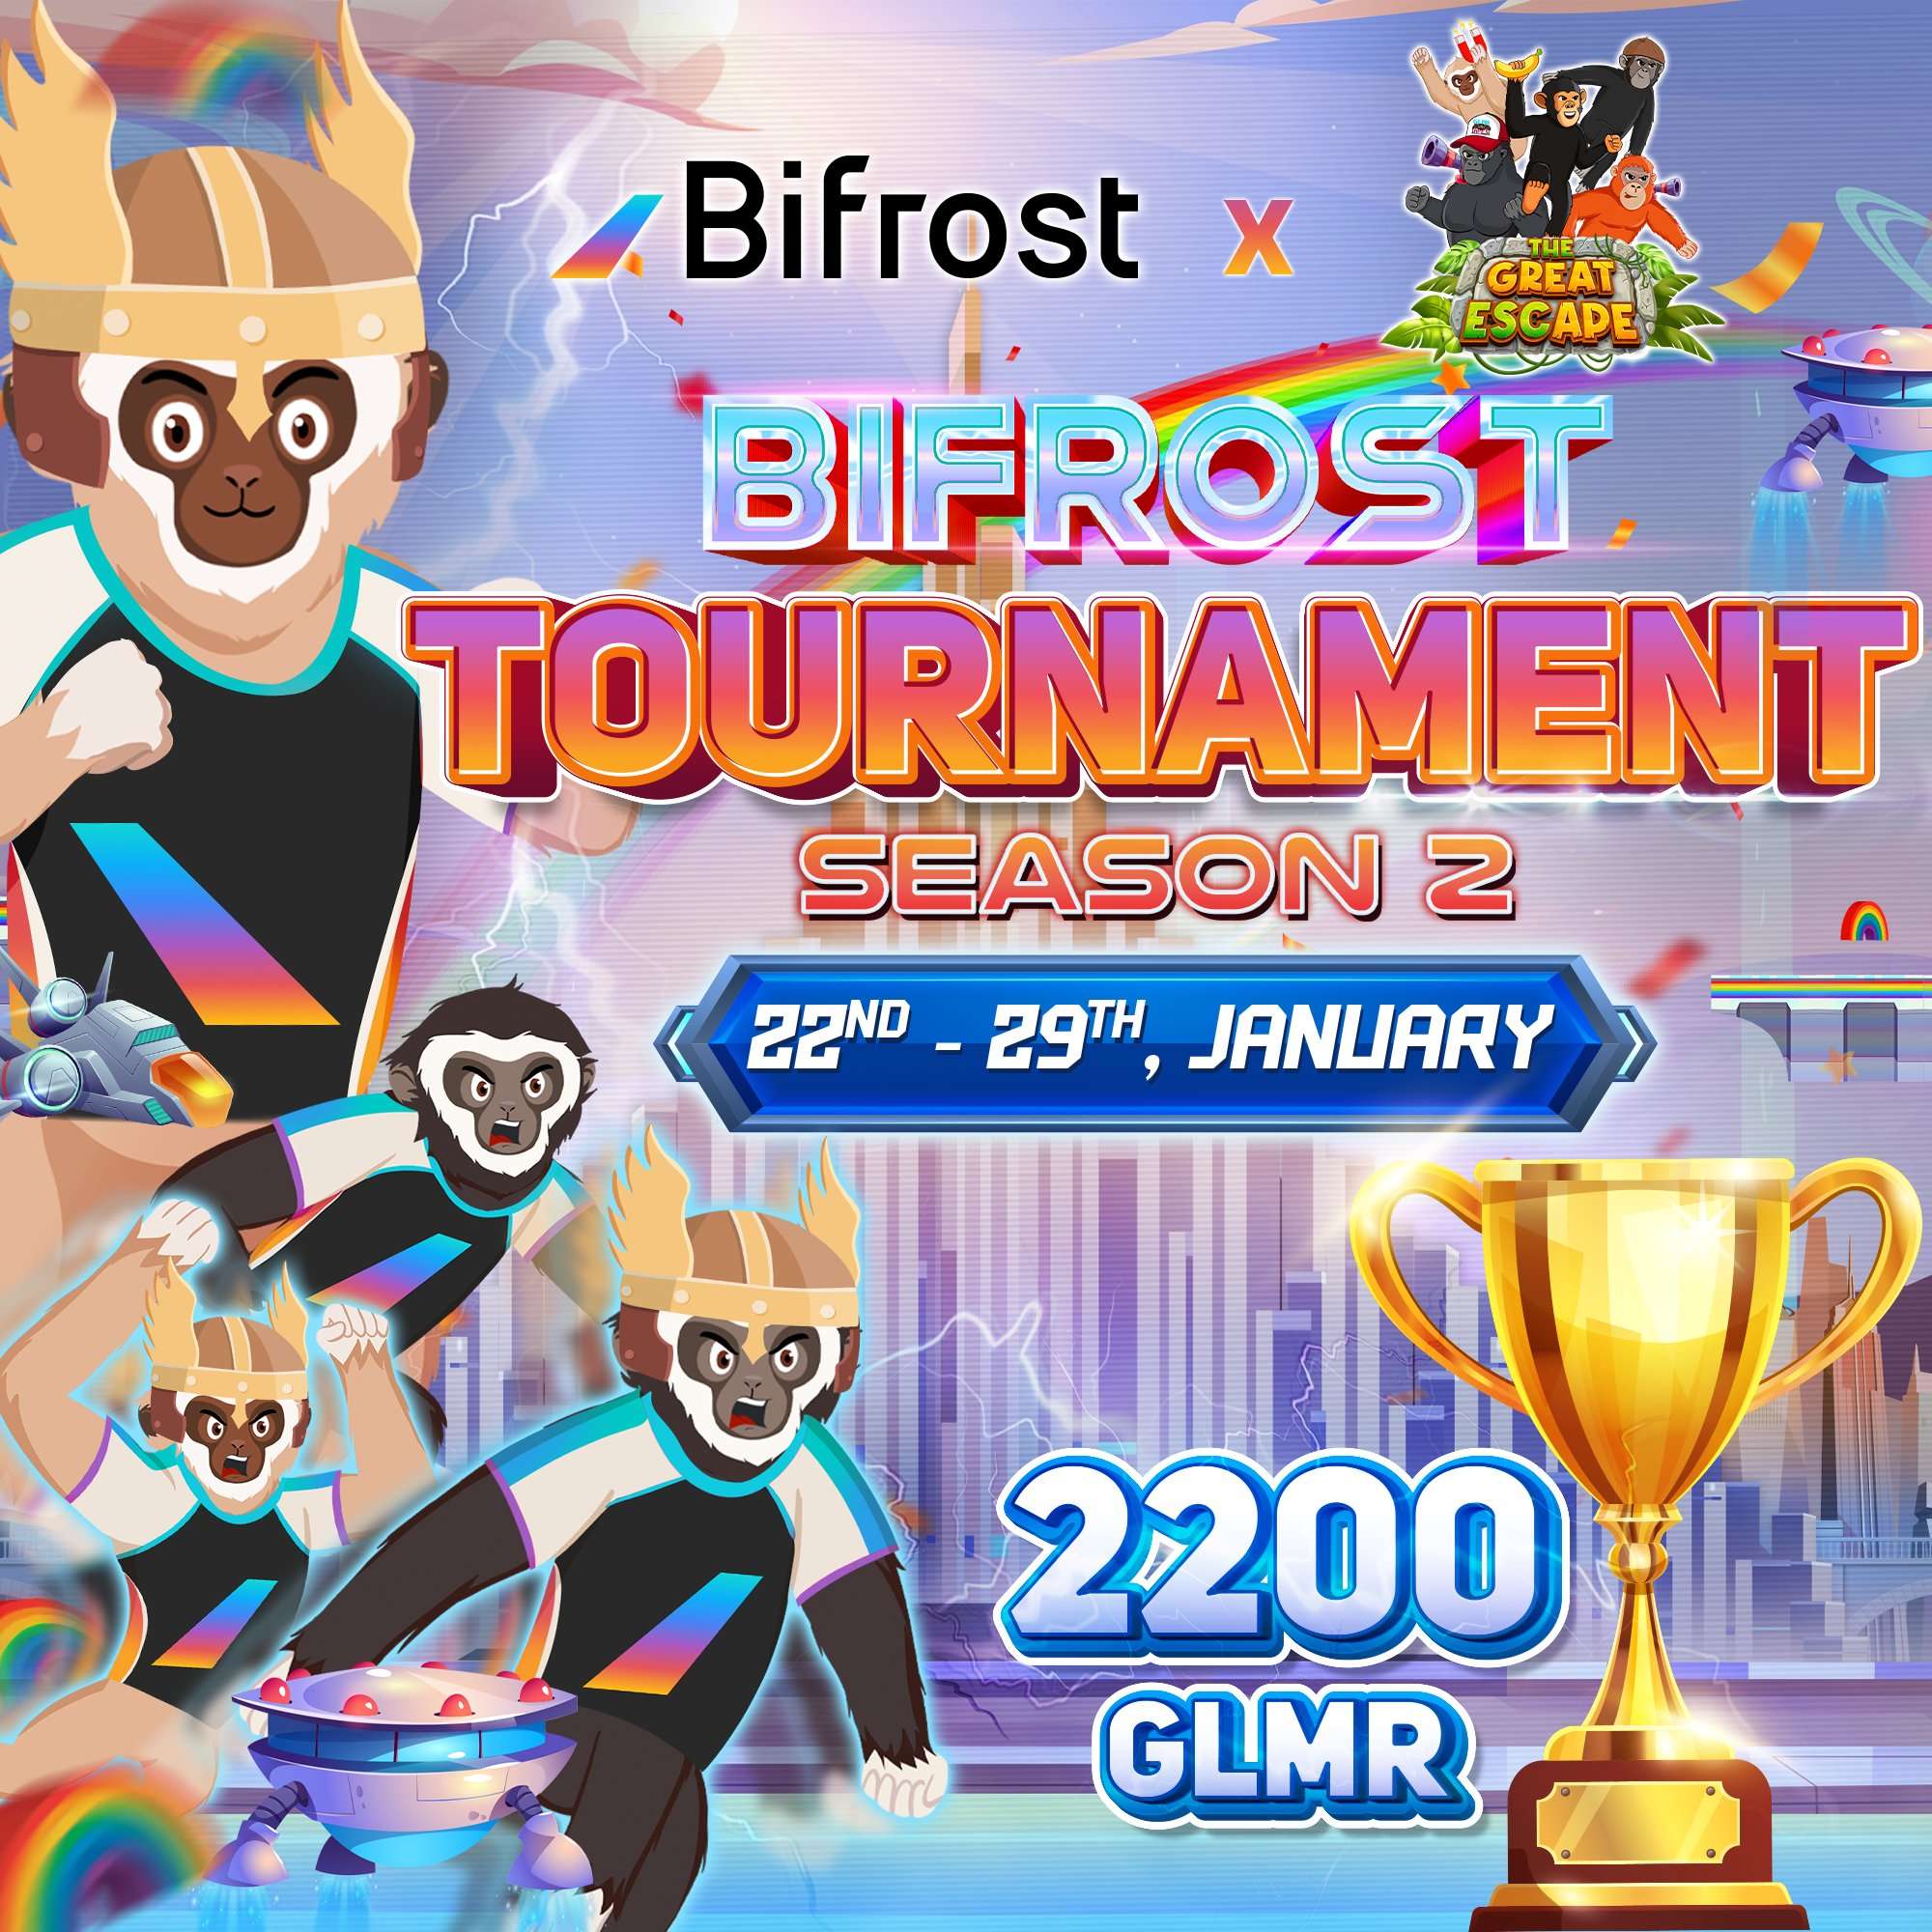 🎮 The Great Escape x Bifrost Tournament Season 2